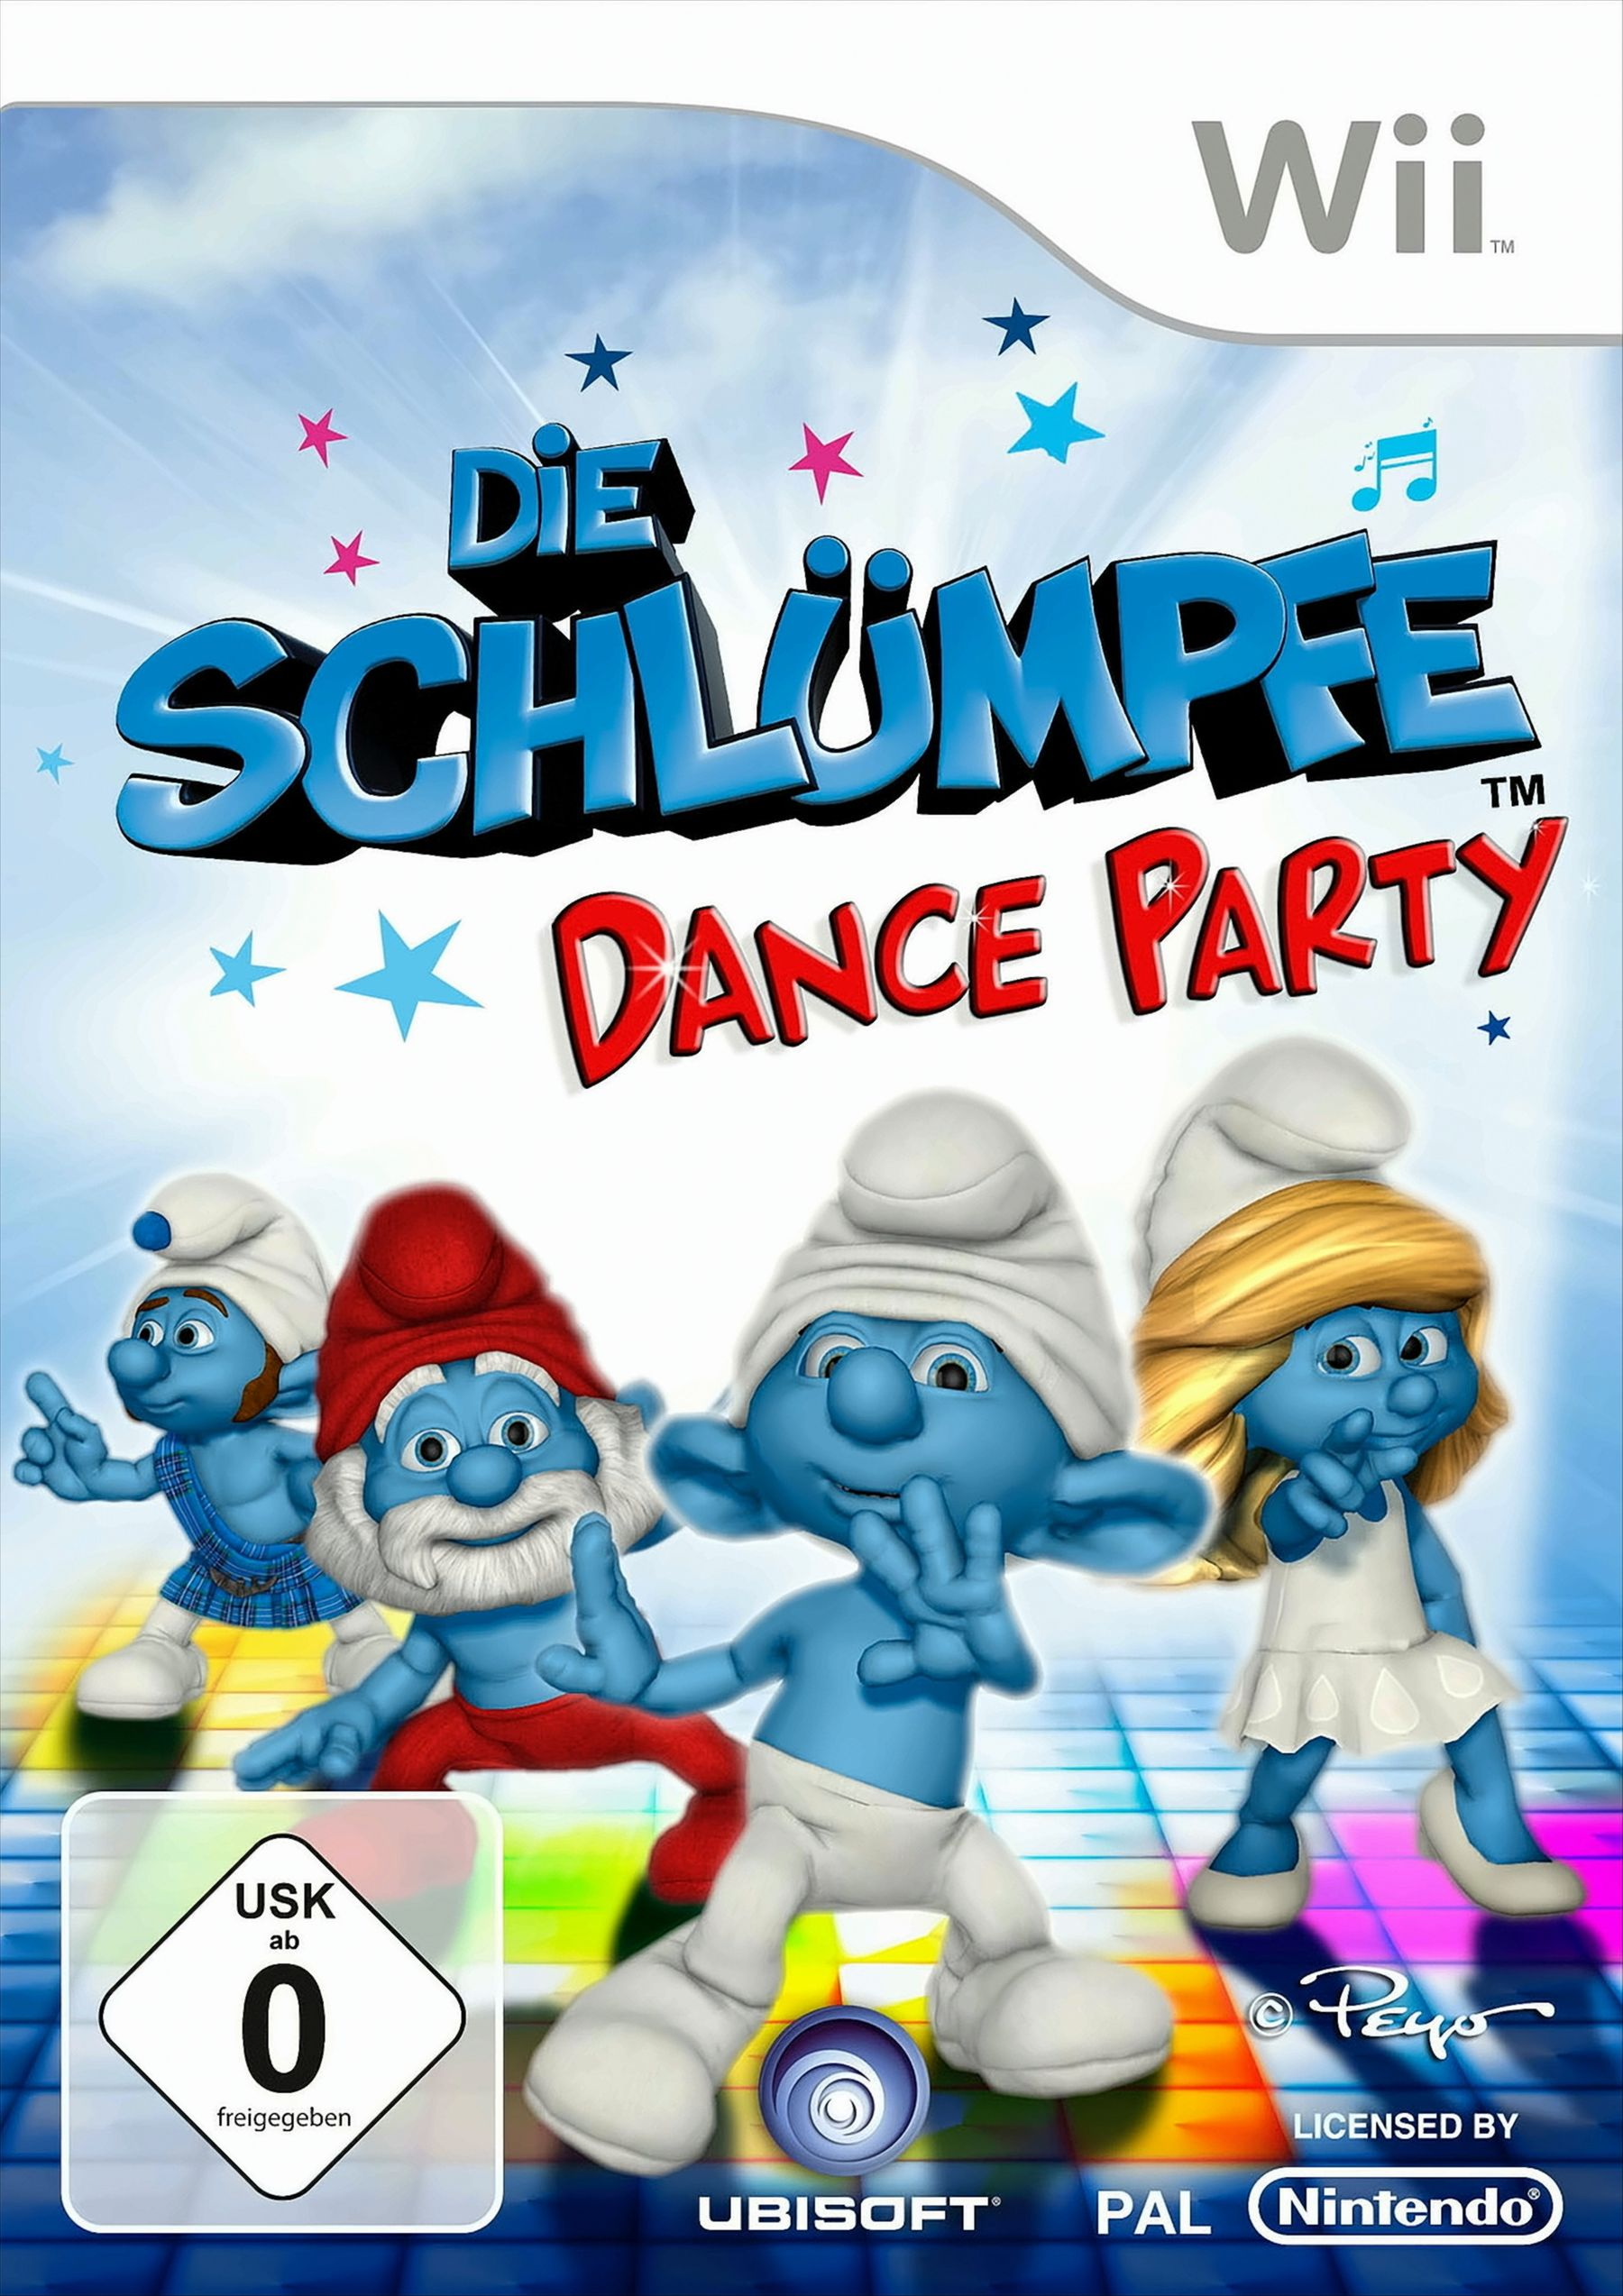 Die Schlümpfe: [Nintendo Party Wii] - Dance